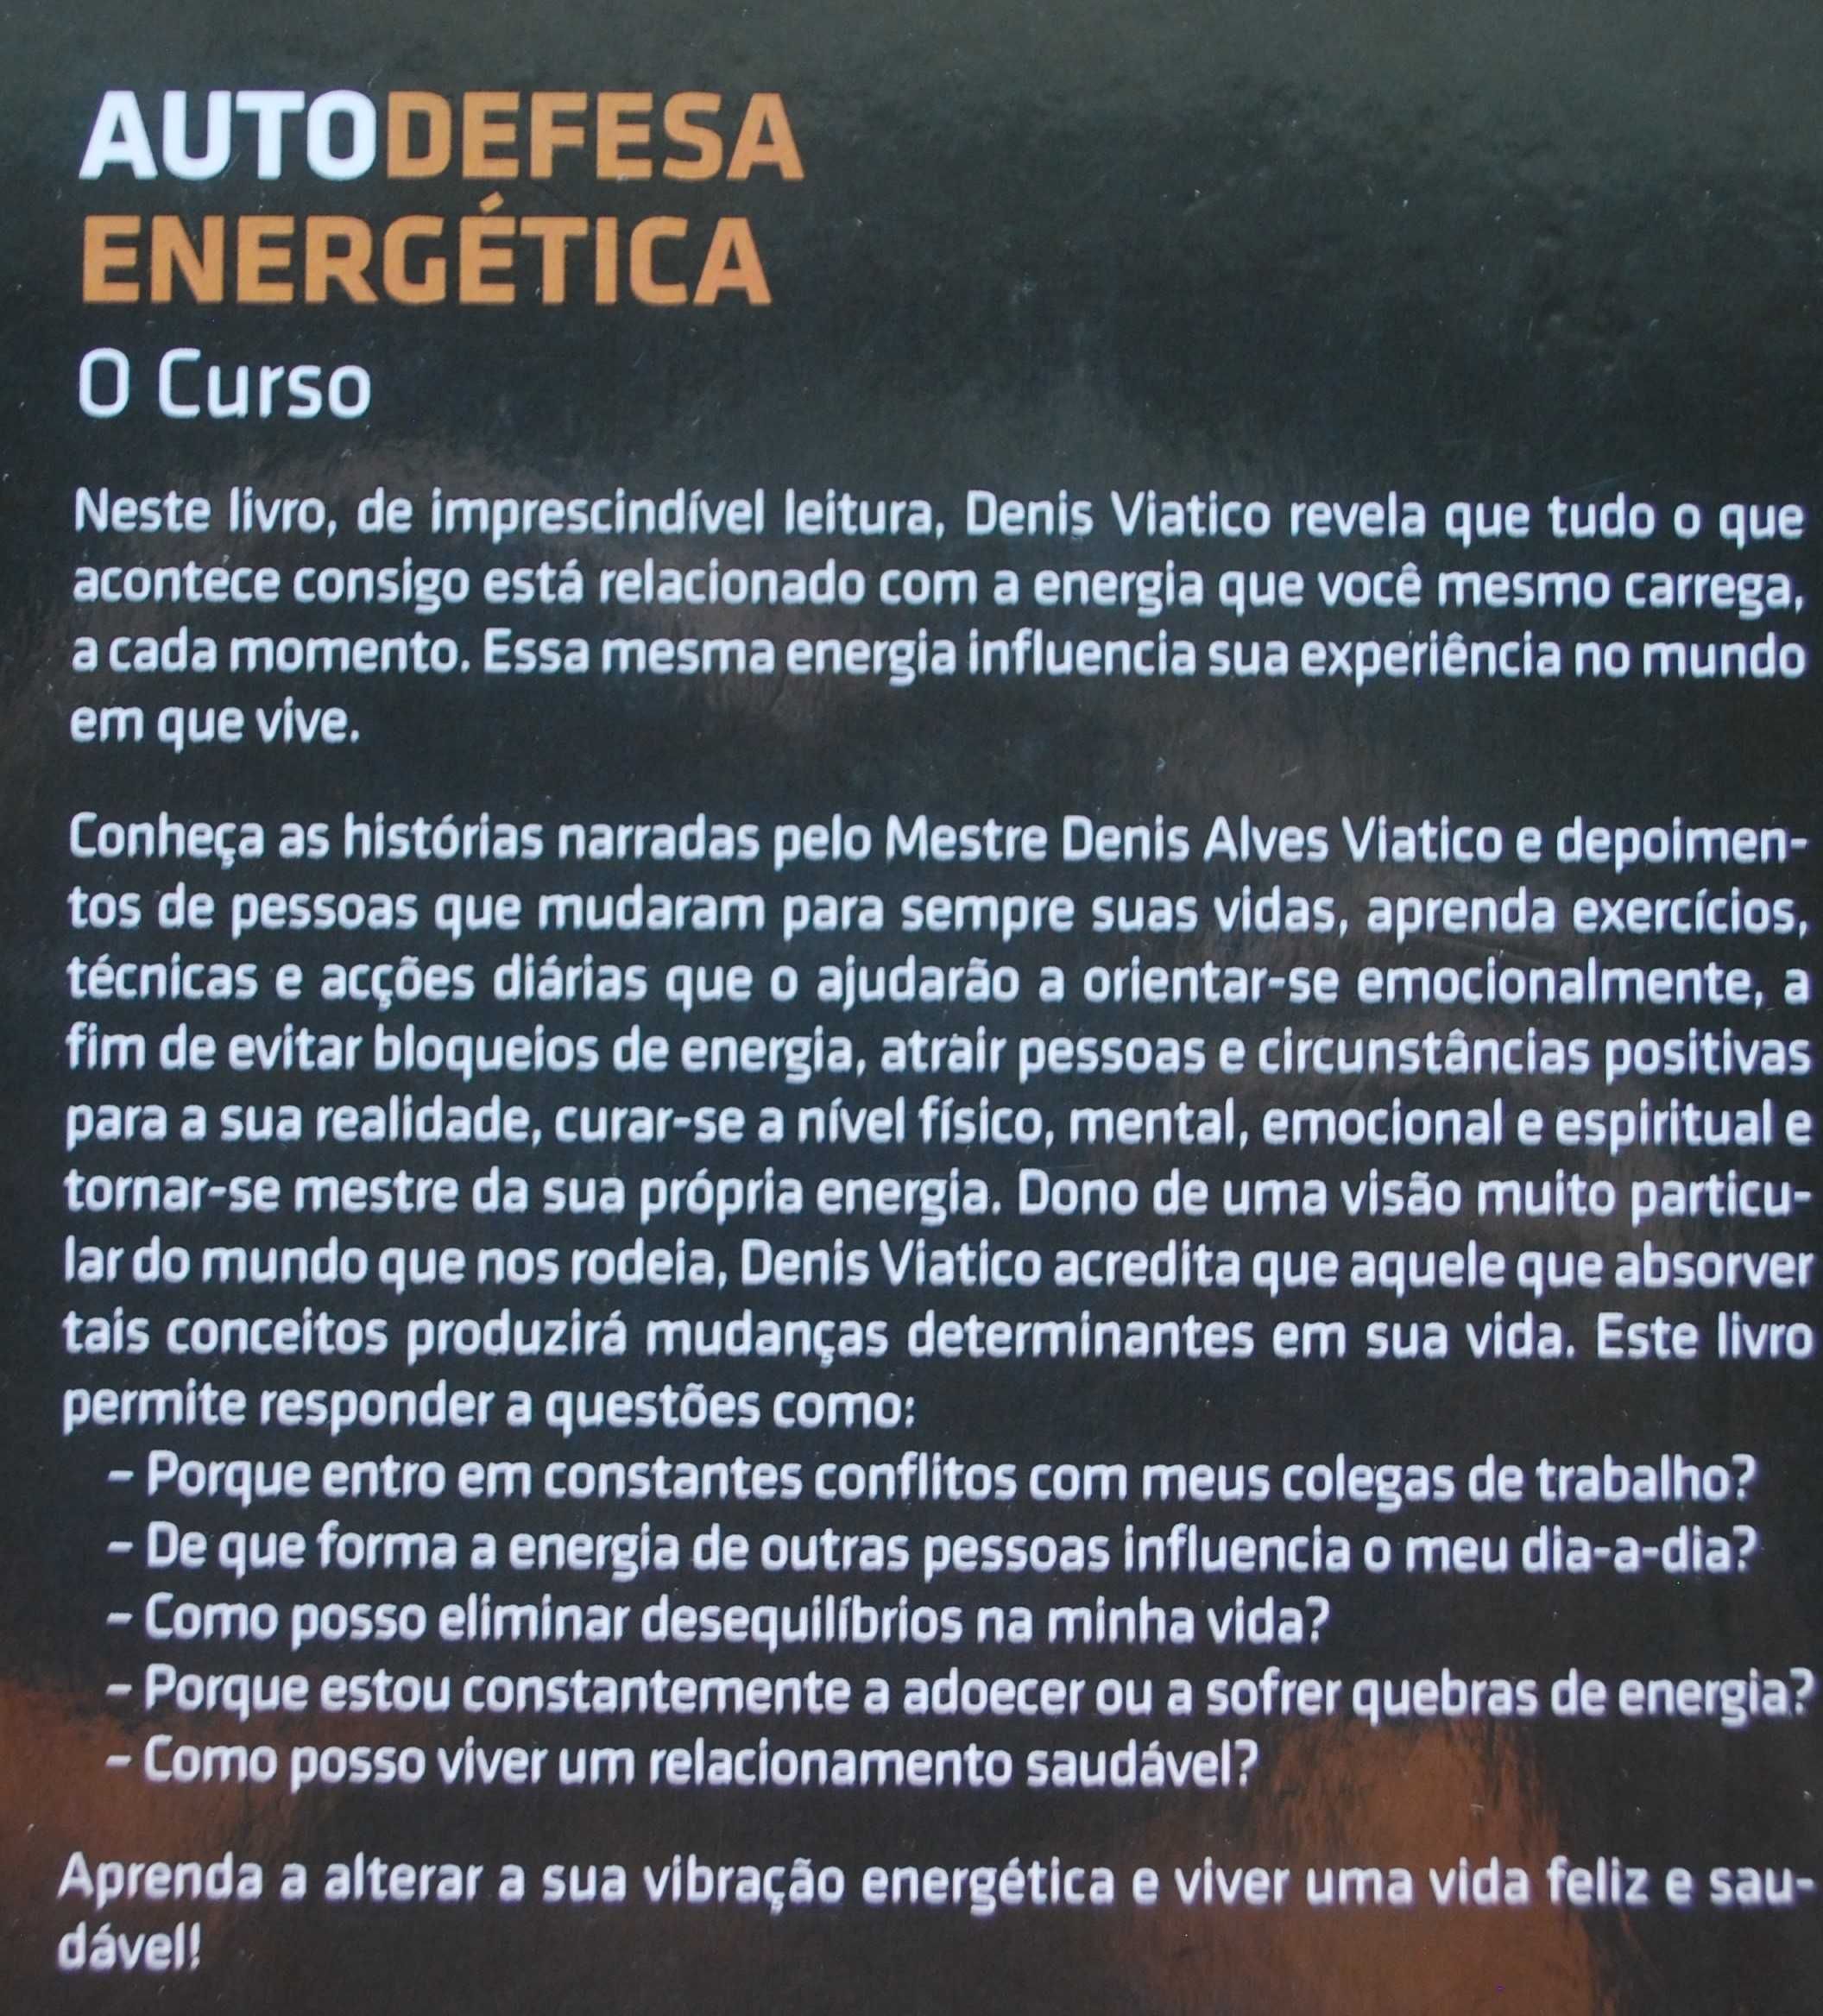 Autodefesa Energética (O Curso) de Mestre Denis Alves Viatico